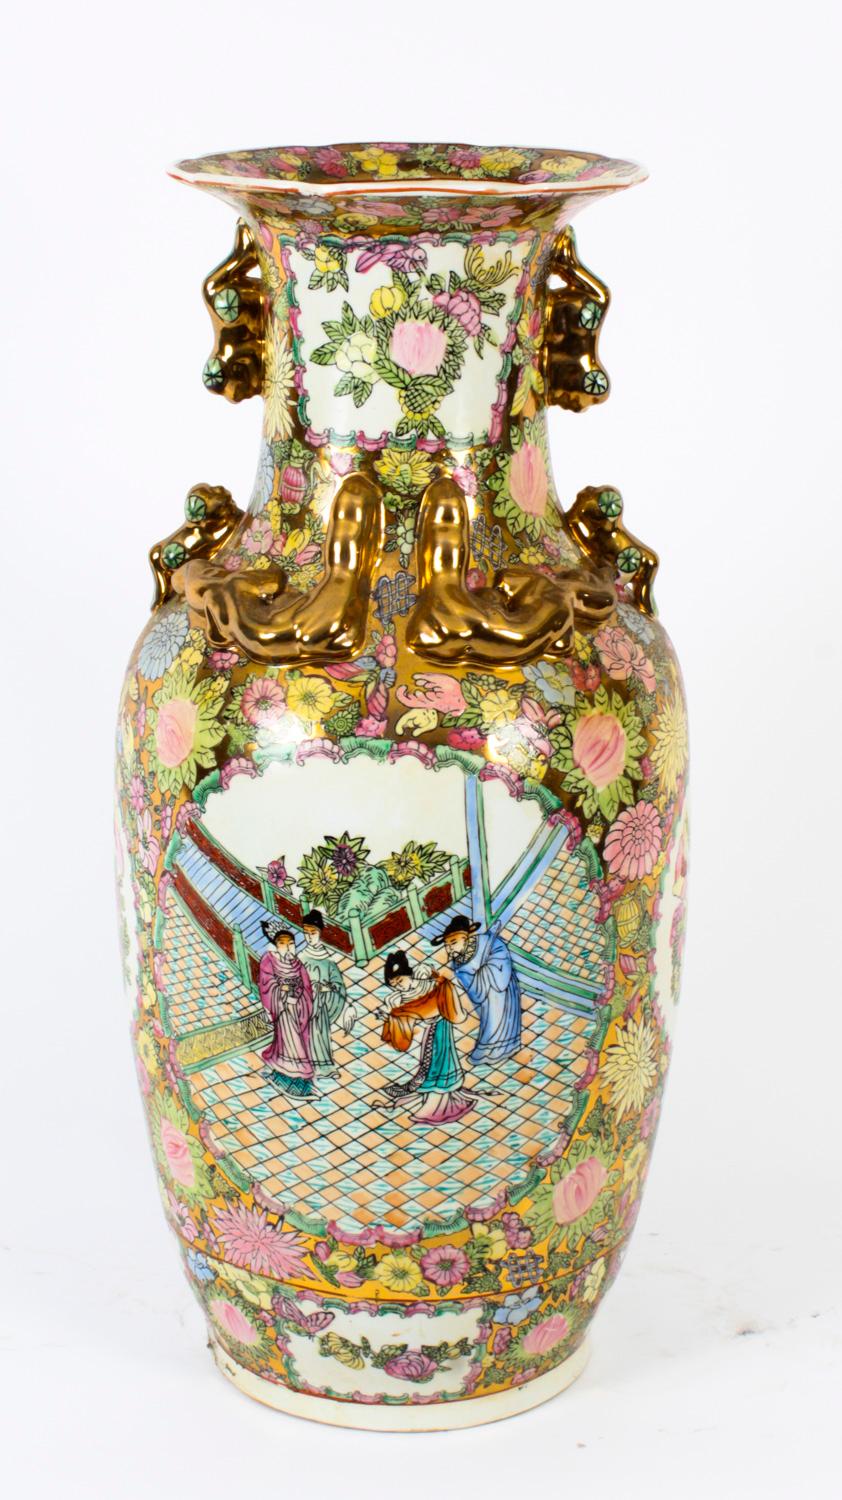 Une belle paire de grands vases en porcelaine peints à la main dans le style famille rose de la dynastie chinoise Qing, datant du milieu du 20e siècle.

Les vases comportent deux panneaux représentant des personnages en costumes traditionnels